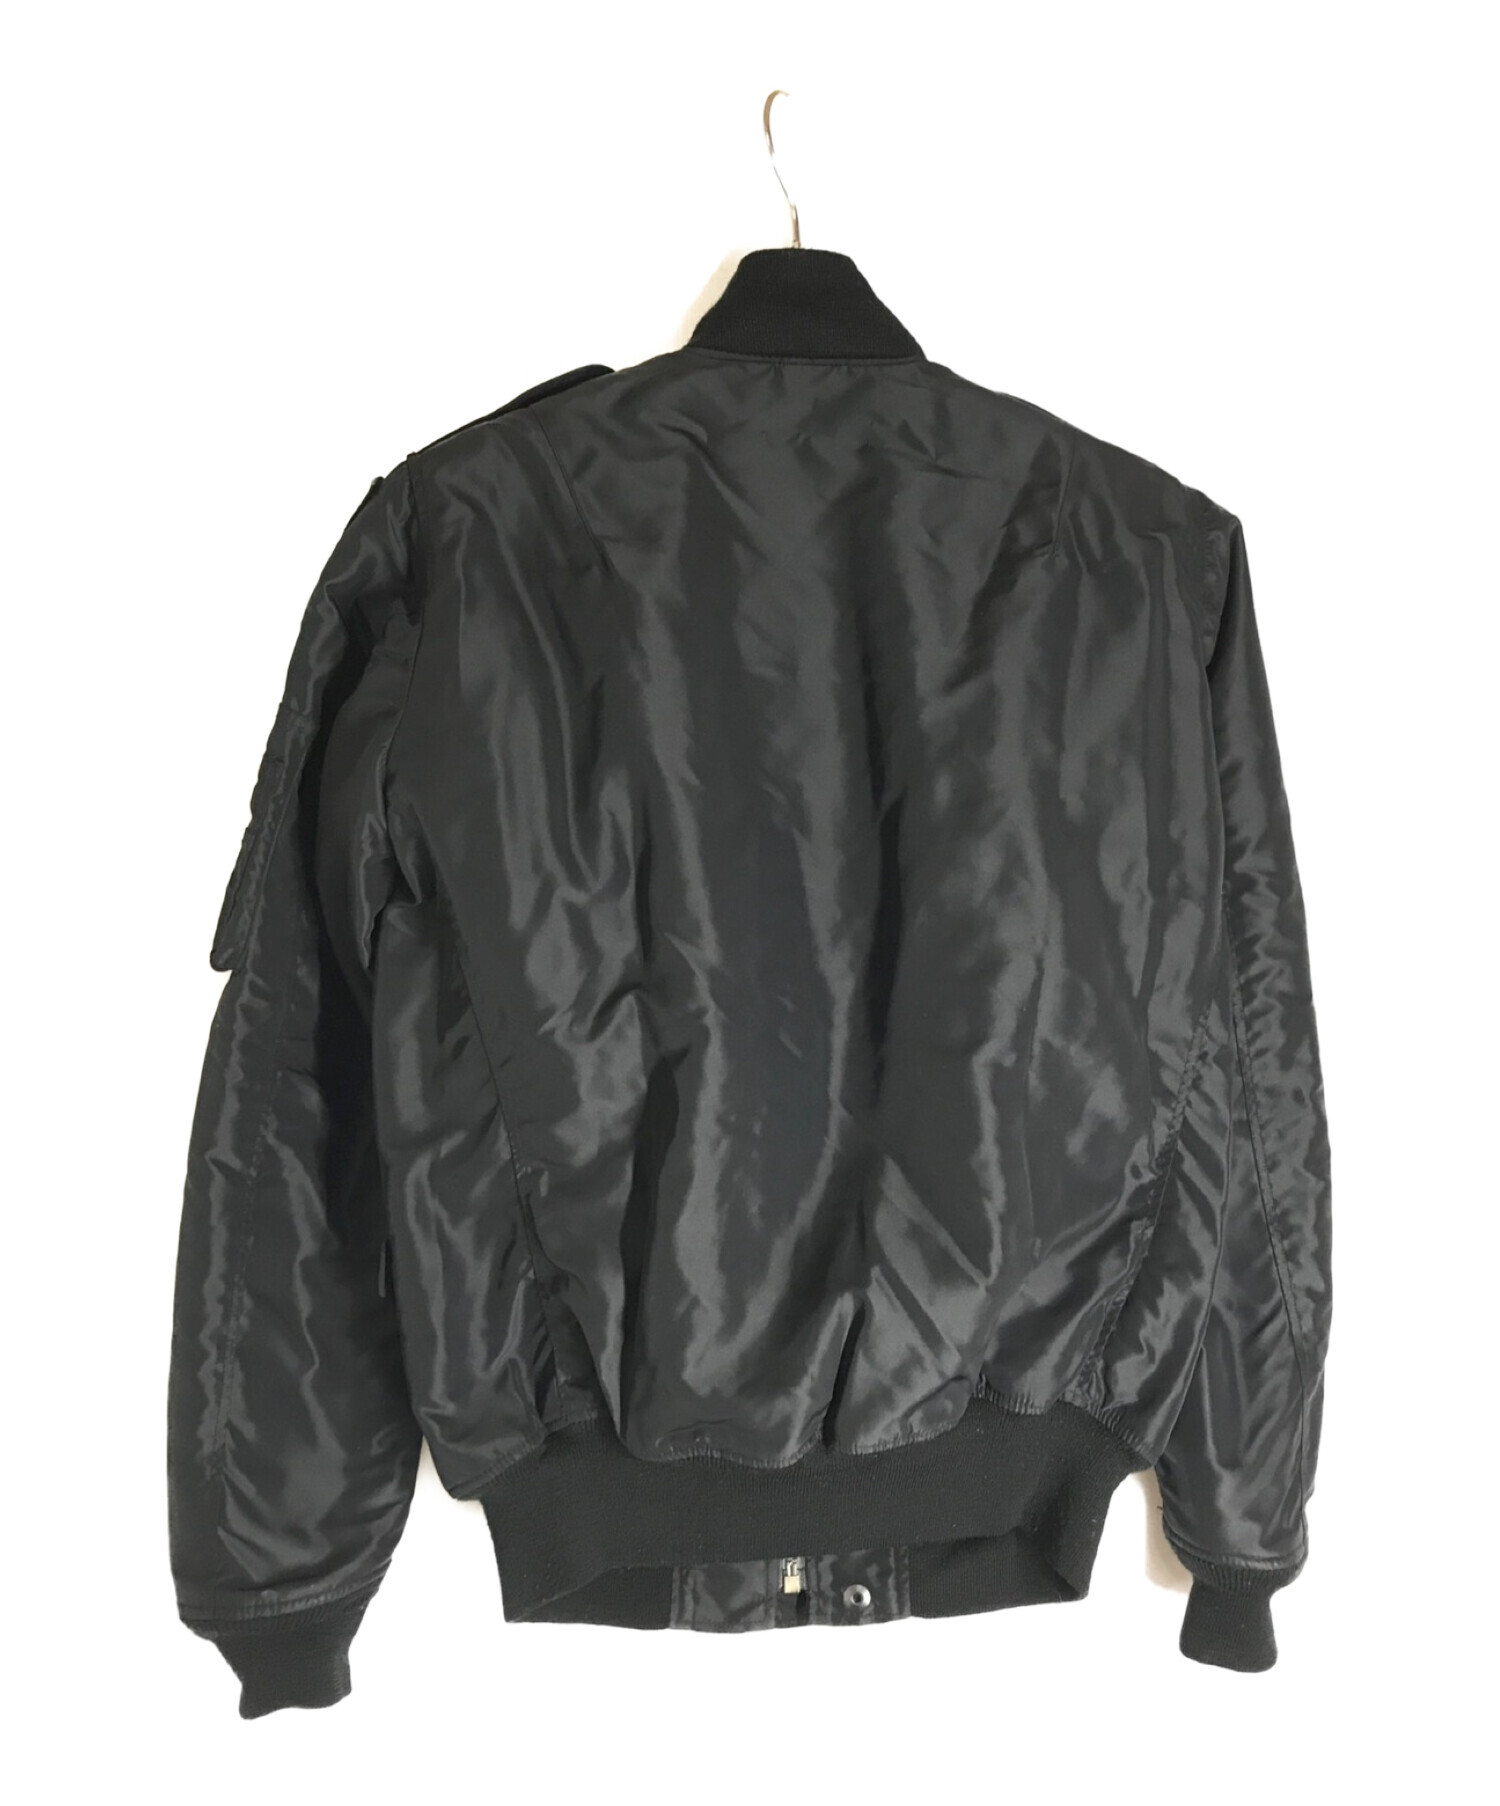 Hysteric Glamour (ヒステリックグラマー) フライトジャケット ブラック サイズ:S